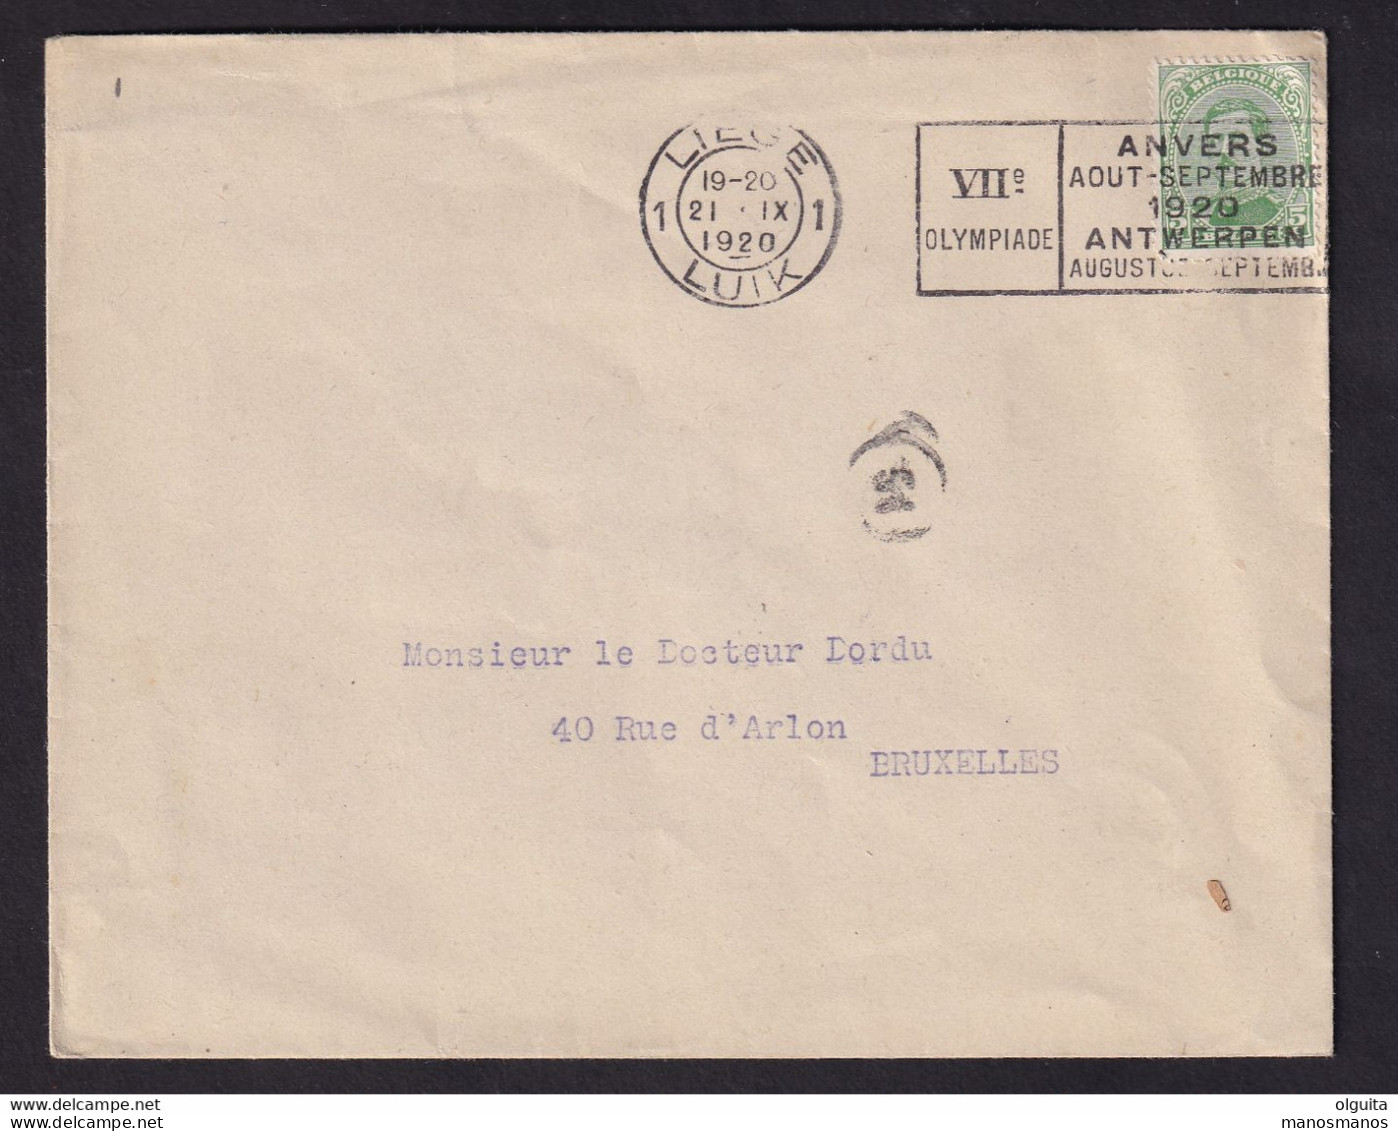 DDCC 348 -- LES IMPRIMES - Enveloppe Ouverte TP Albert 5 C - Cachet Mécanique LIEGE 1 Jeux Olympiques 1920 - Zomer 1920: Antwerpen